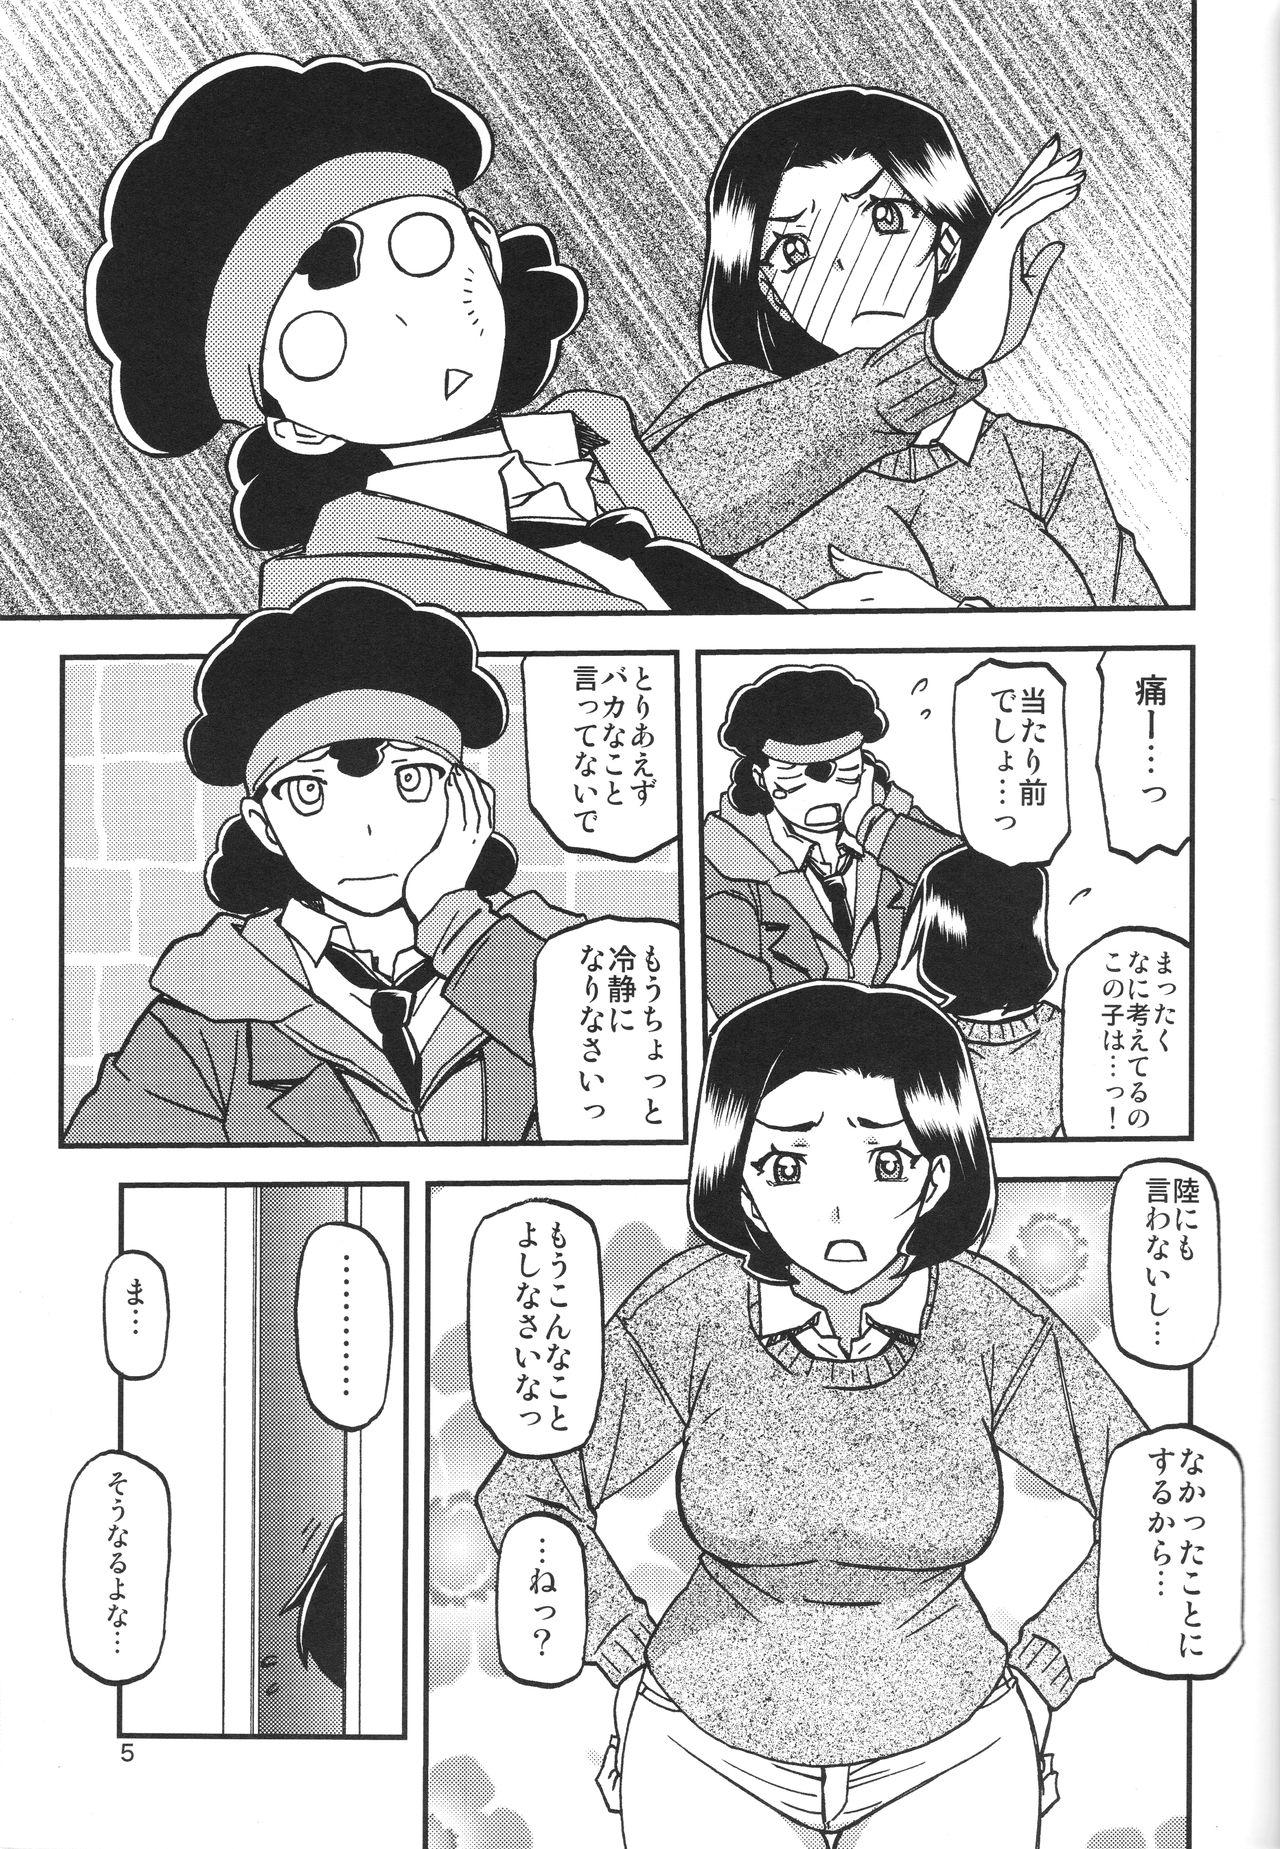 Mas Akebi no Mi - Misora Gets - Page 4